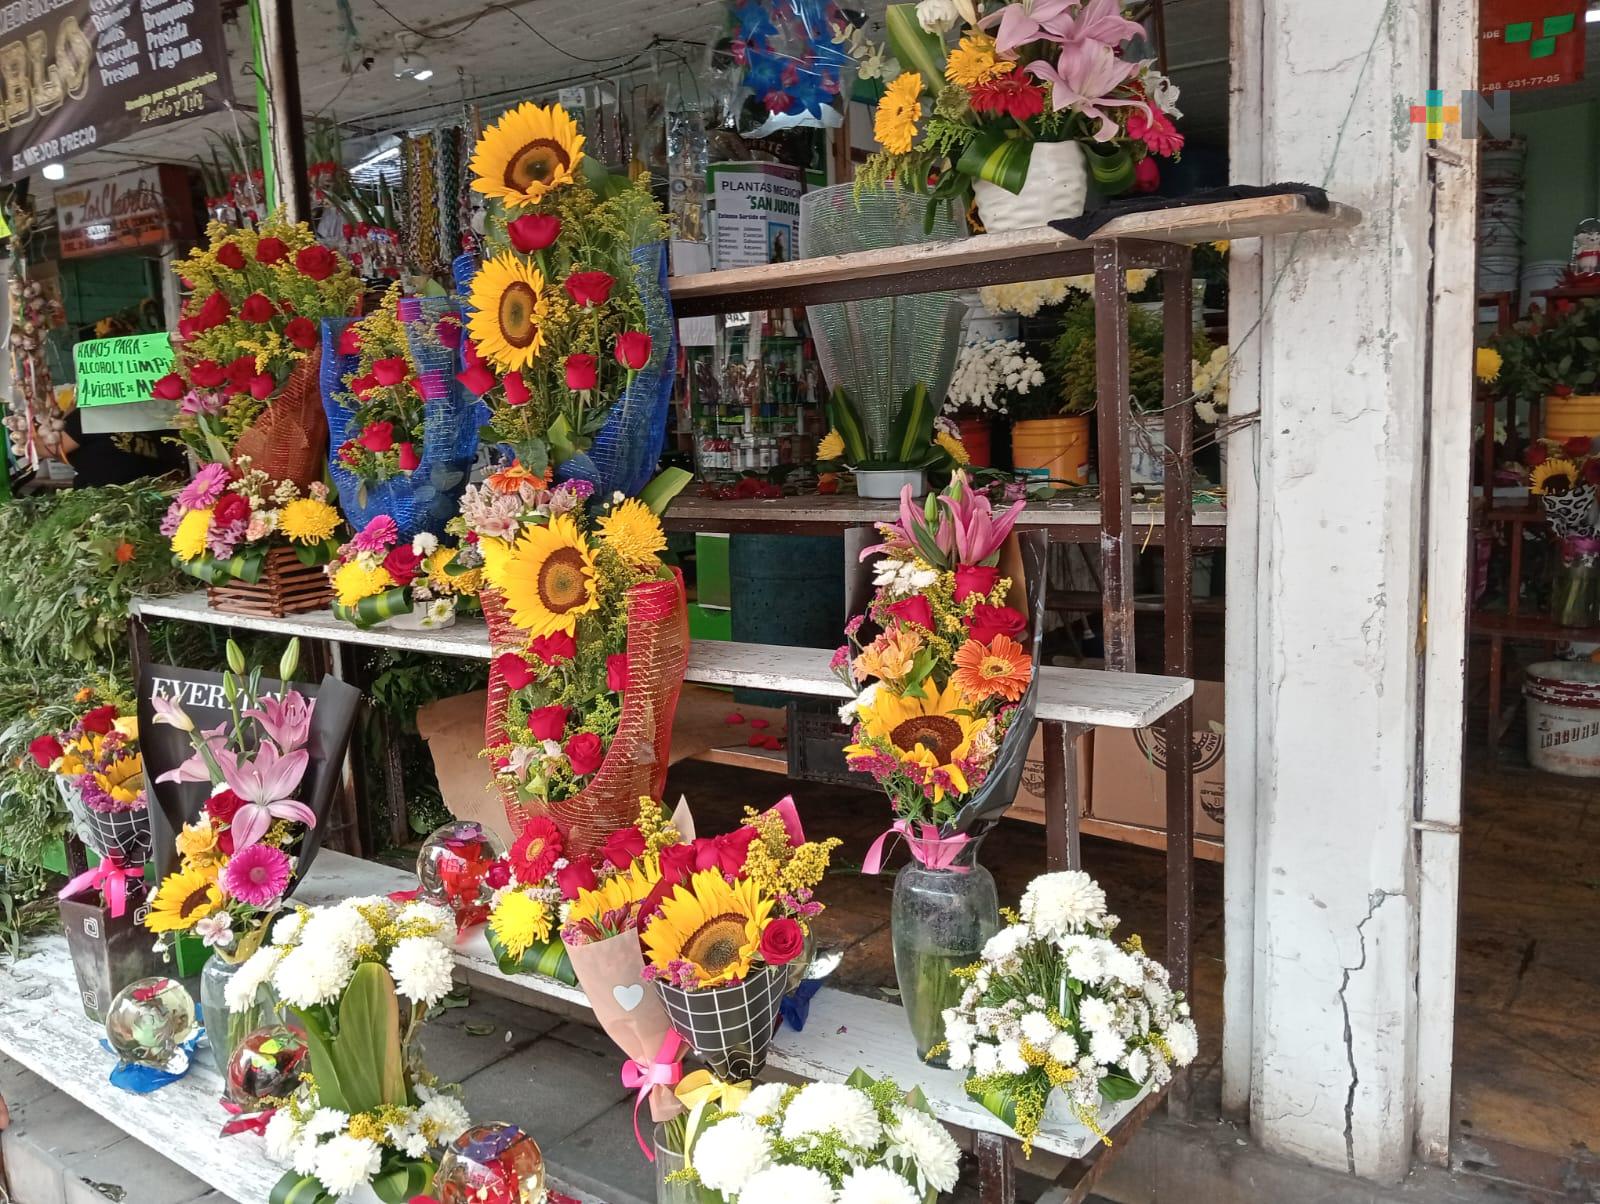 Comerciantes de flores reportan bajas ventas en mercado Hidalgo